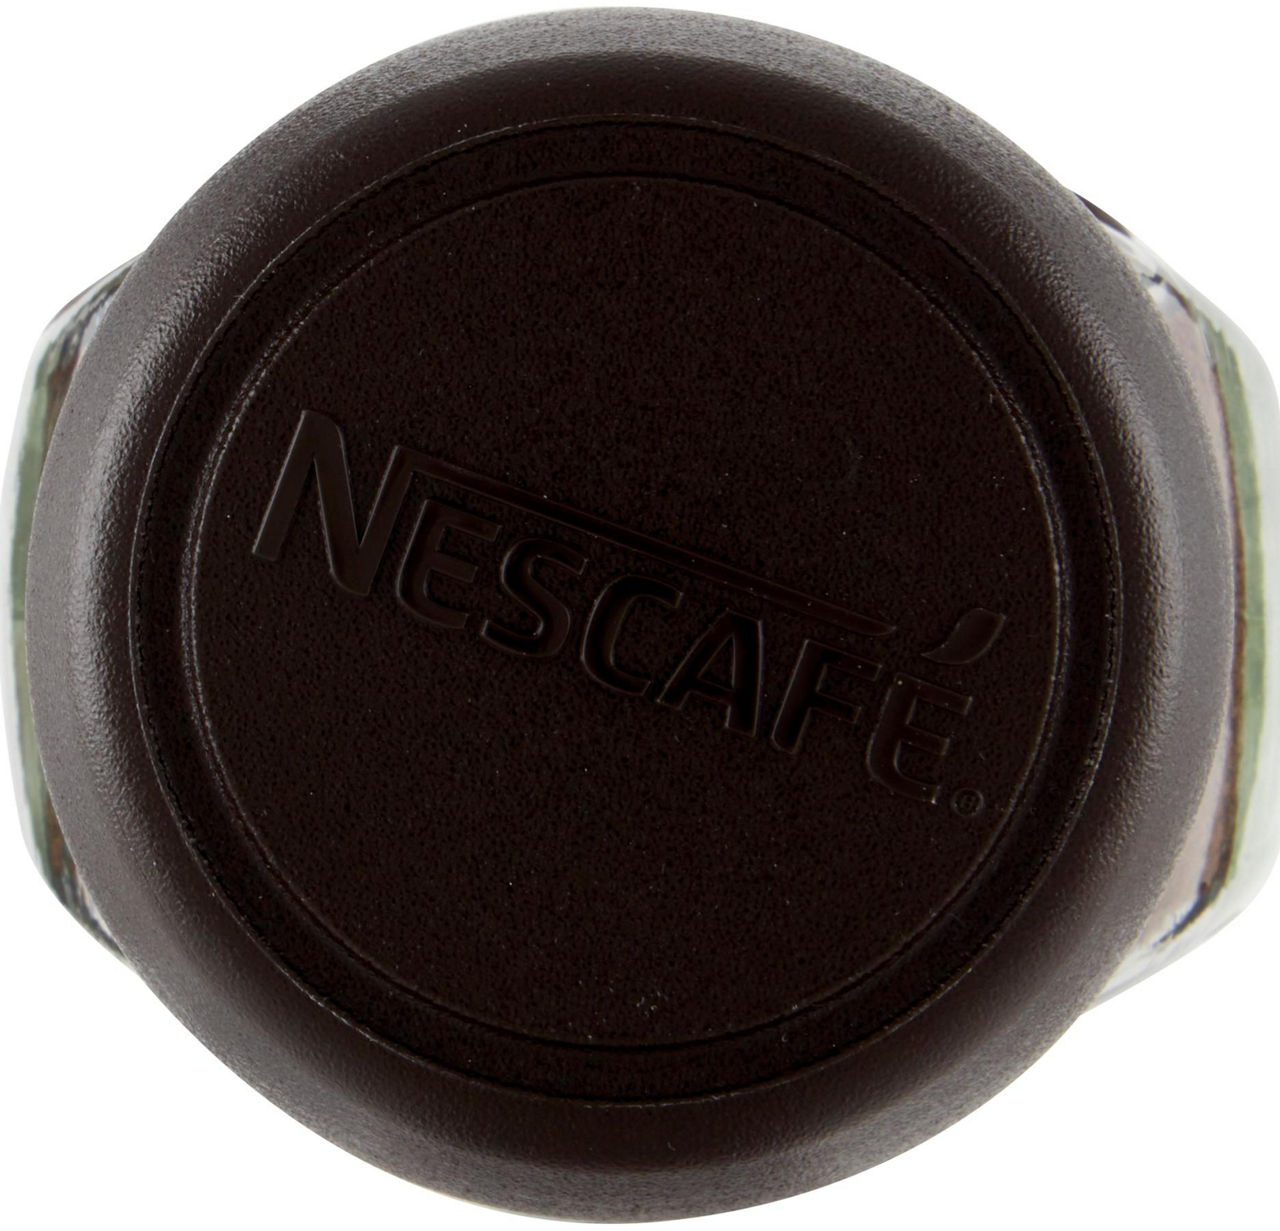 CAFFE' NESCAFE' CLASSIC V.V. GR.100 - 4